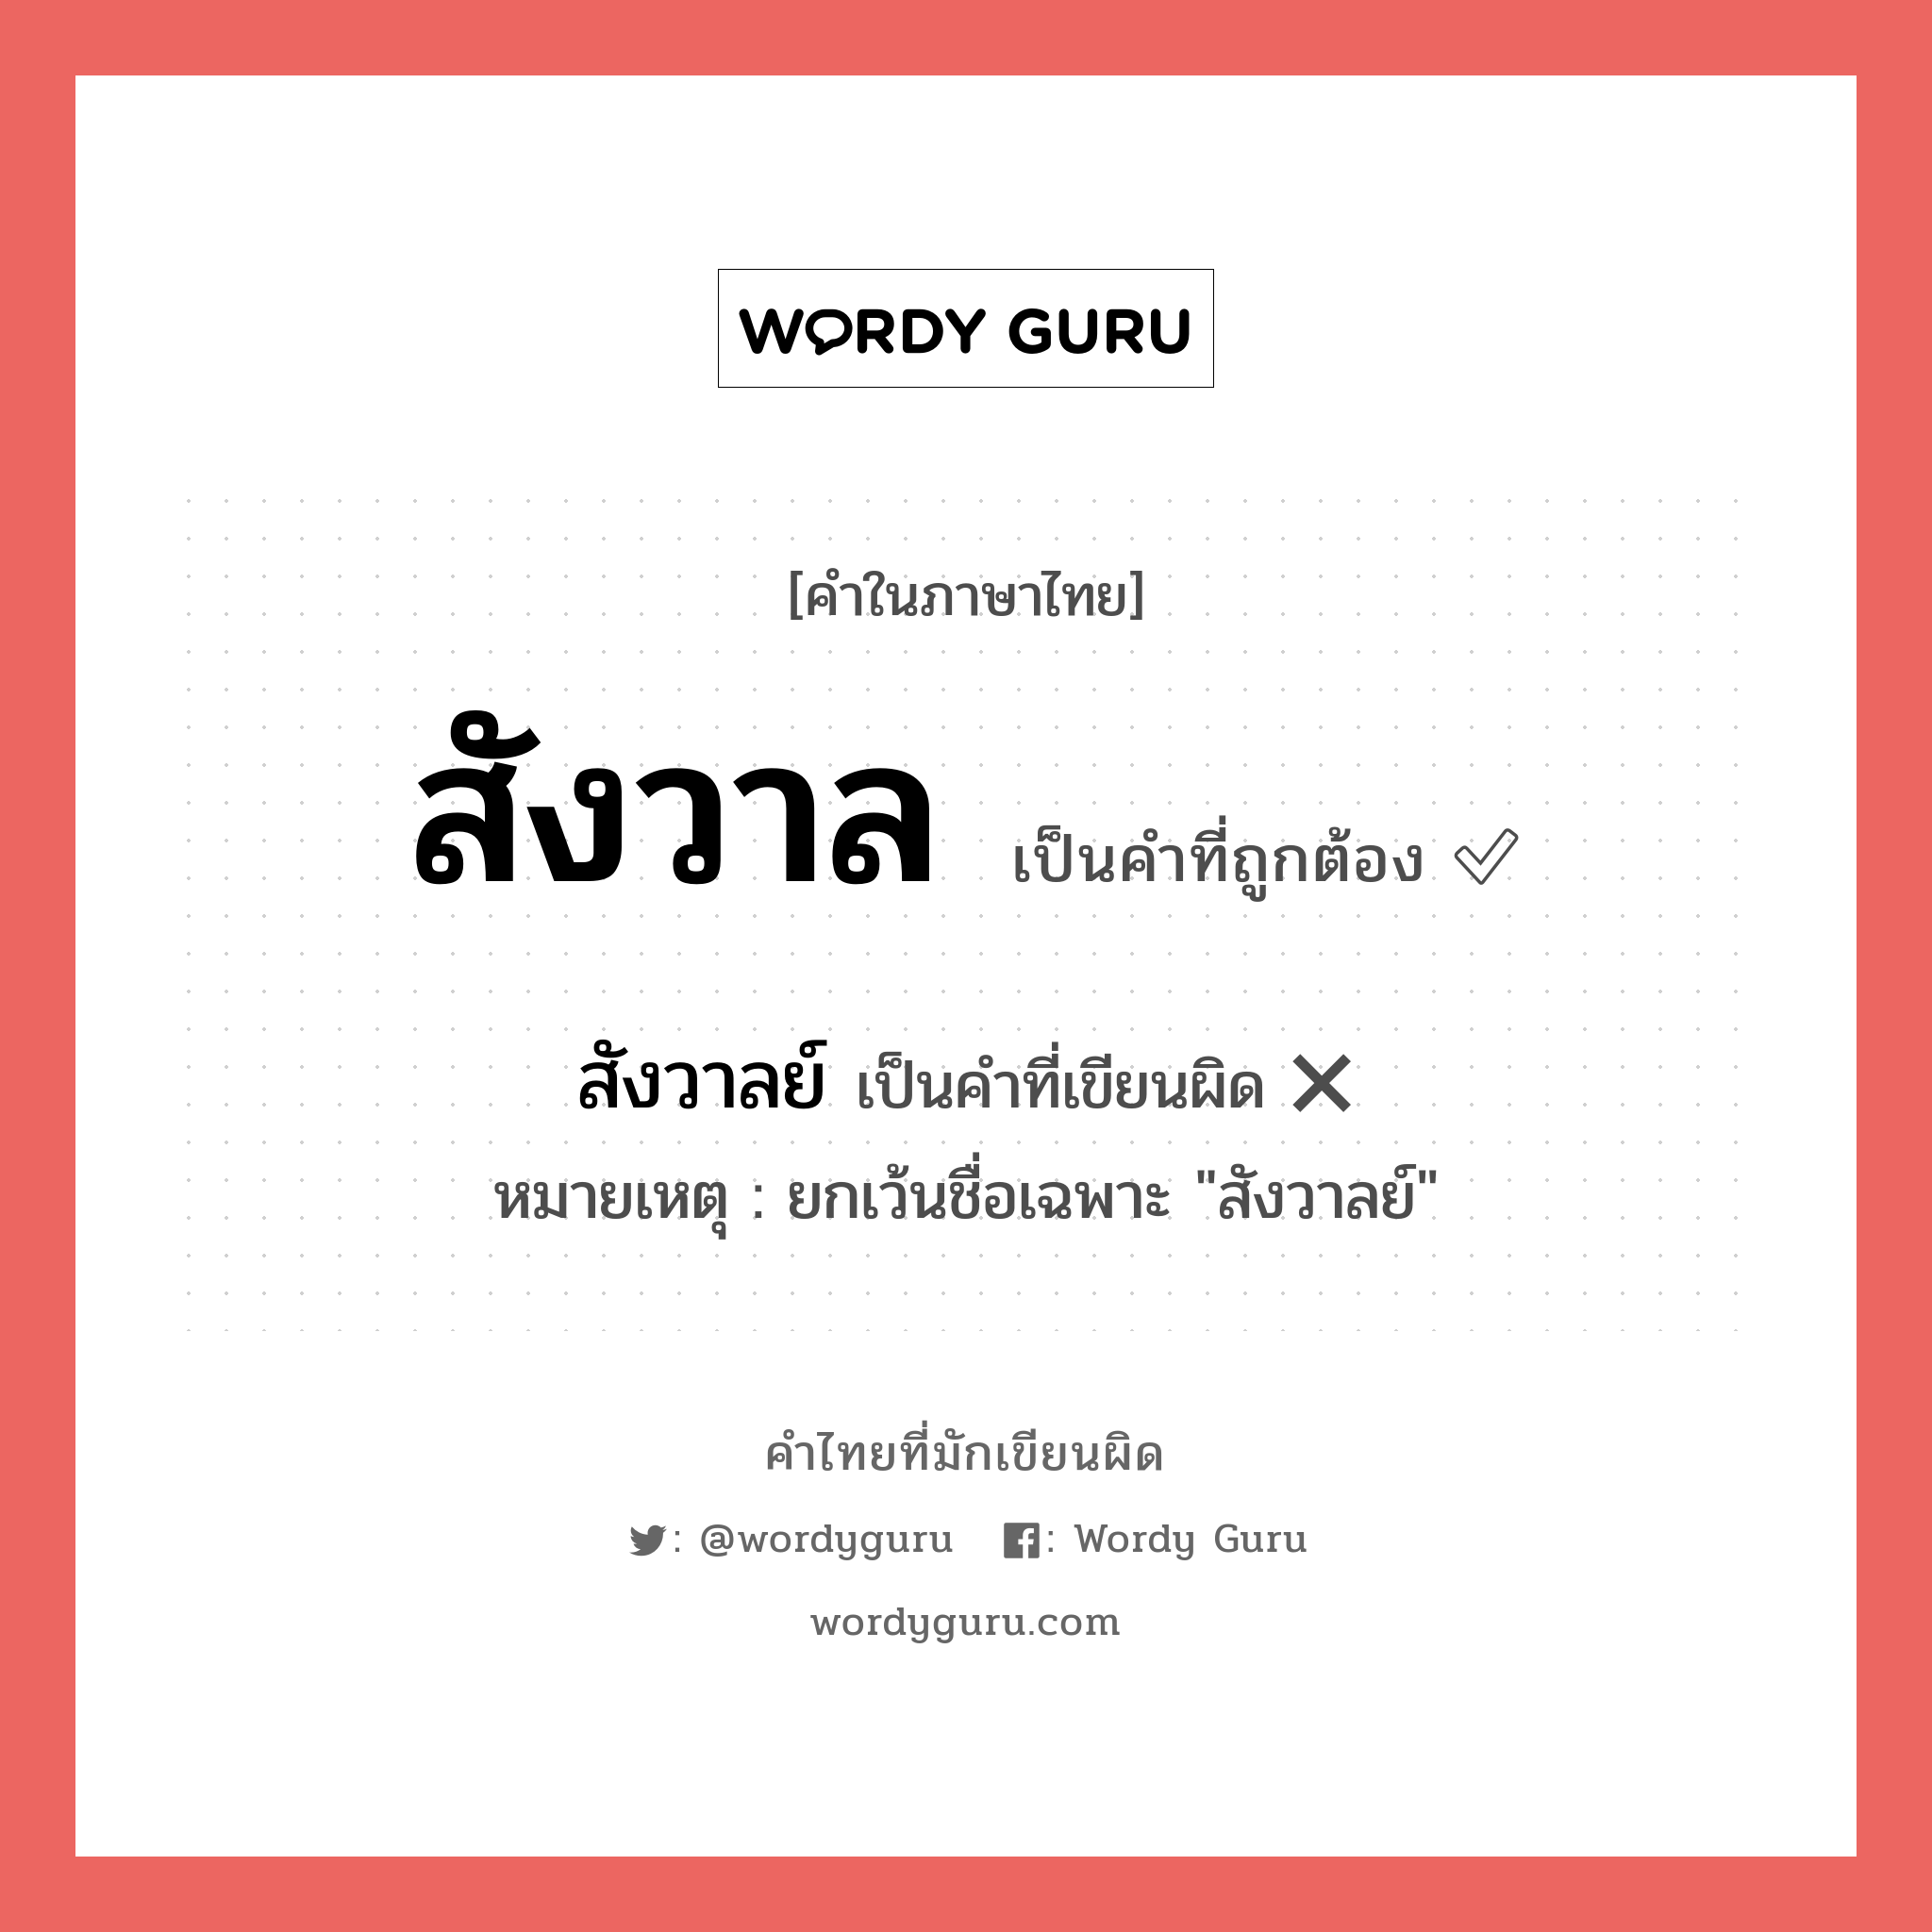 สังวาล หรือ สังวาลย์ คำไหนเขียนถูก?, คำในภาษาไทยที่มักเขียนผิด สังวาล คำที่ผิด ❌ สังวาลย์ หมายเหตุ ยกเว้นชื่อเฉพาะ "สังวาลย์"